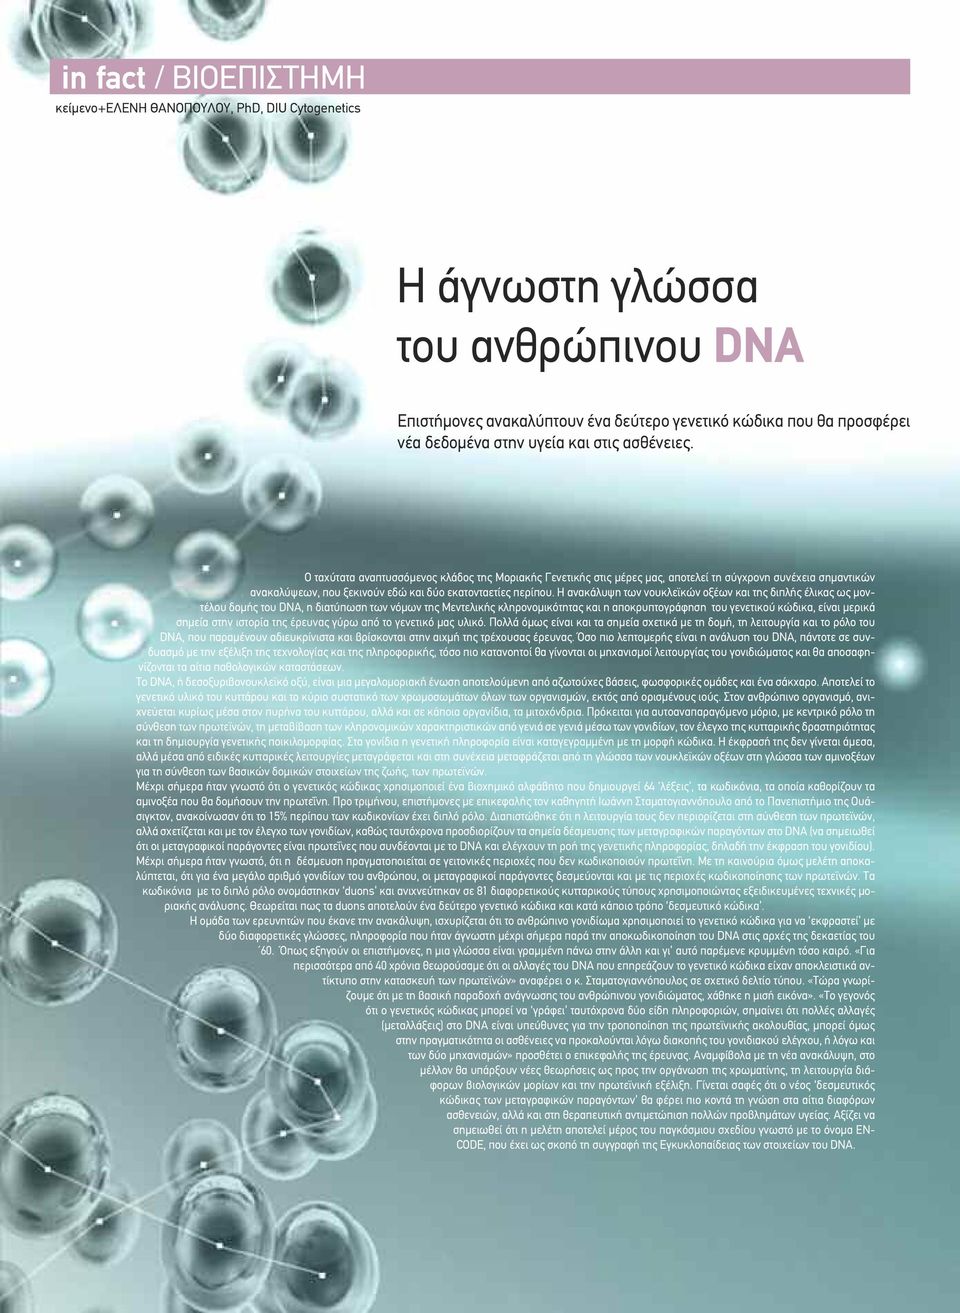 Η ανακάλυψη των νουκλεϊκών οξέων και της διπλής έλικας ως μοντέλου δομής του DNA, η διατύπωση των νόμων της Μεντελικής κληρονομικότητας και η αποκρυπτογράφηση του γενετικού κώδικα, είναι μερικά